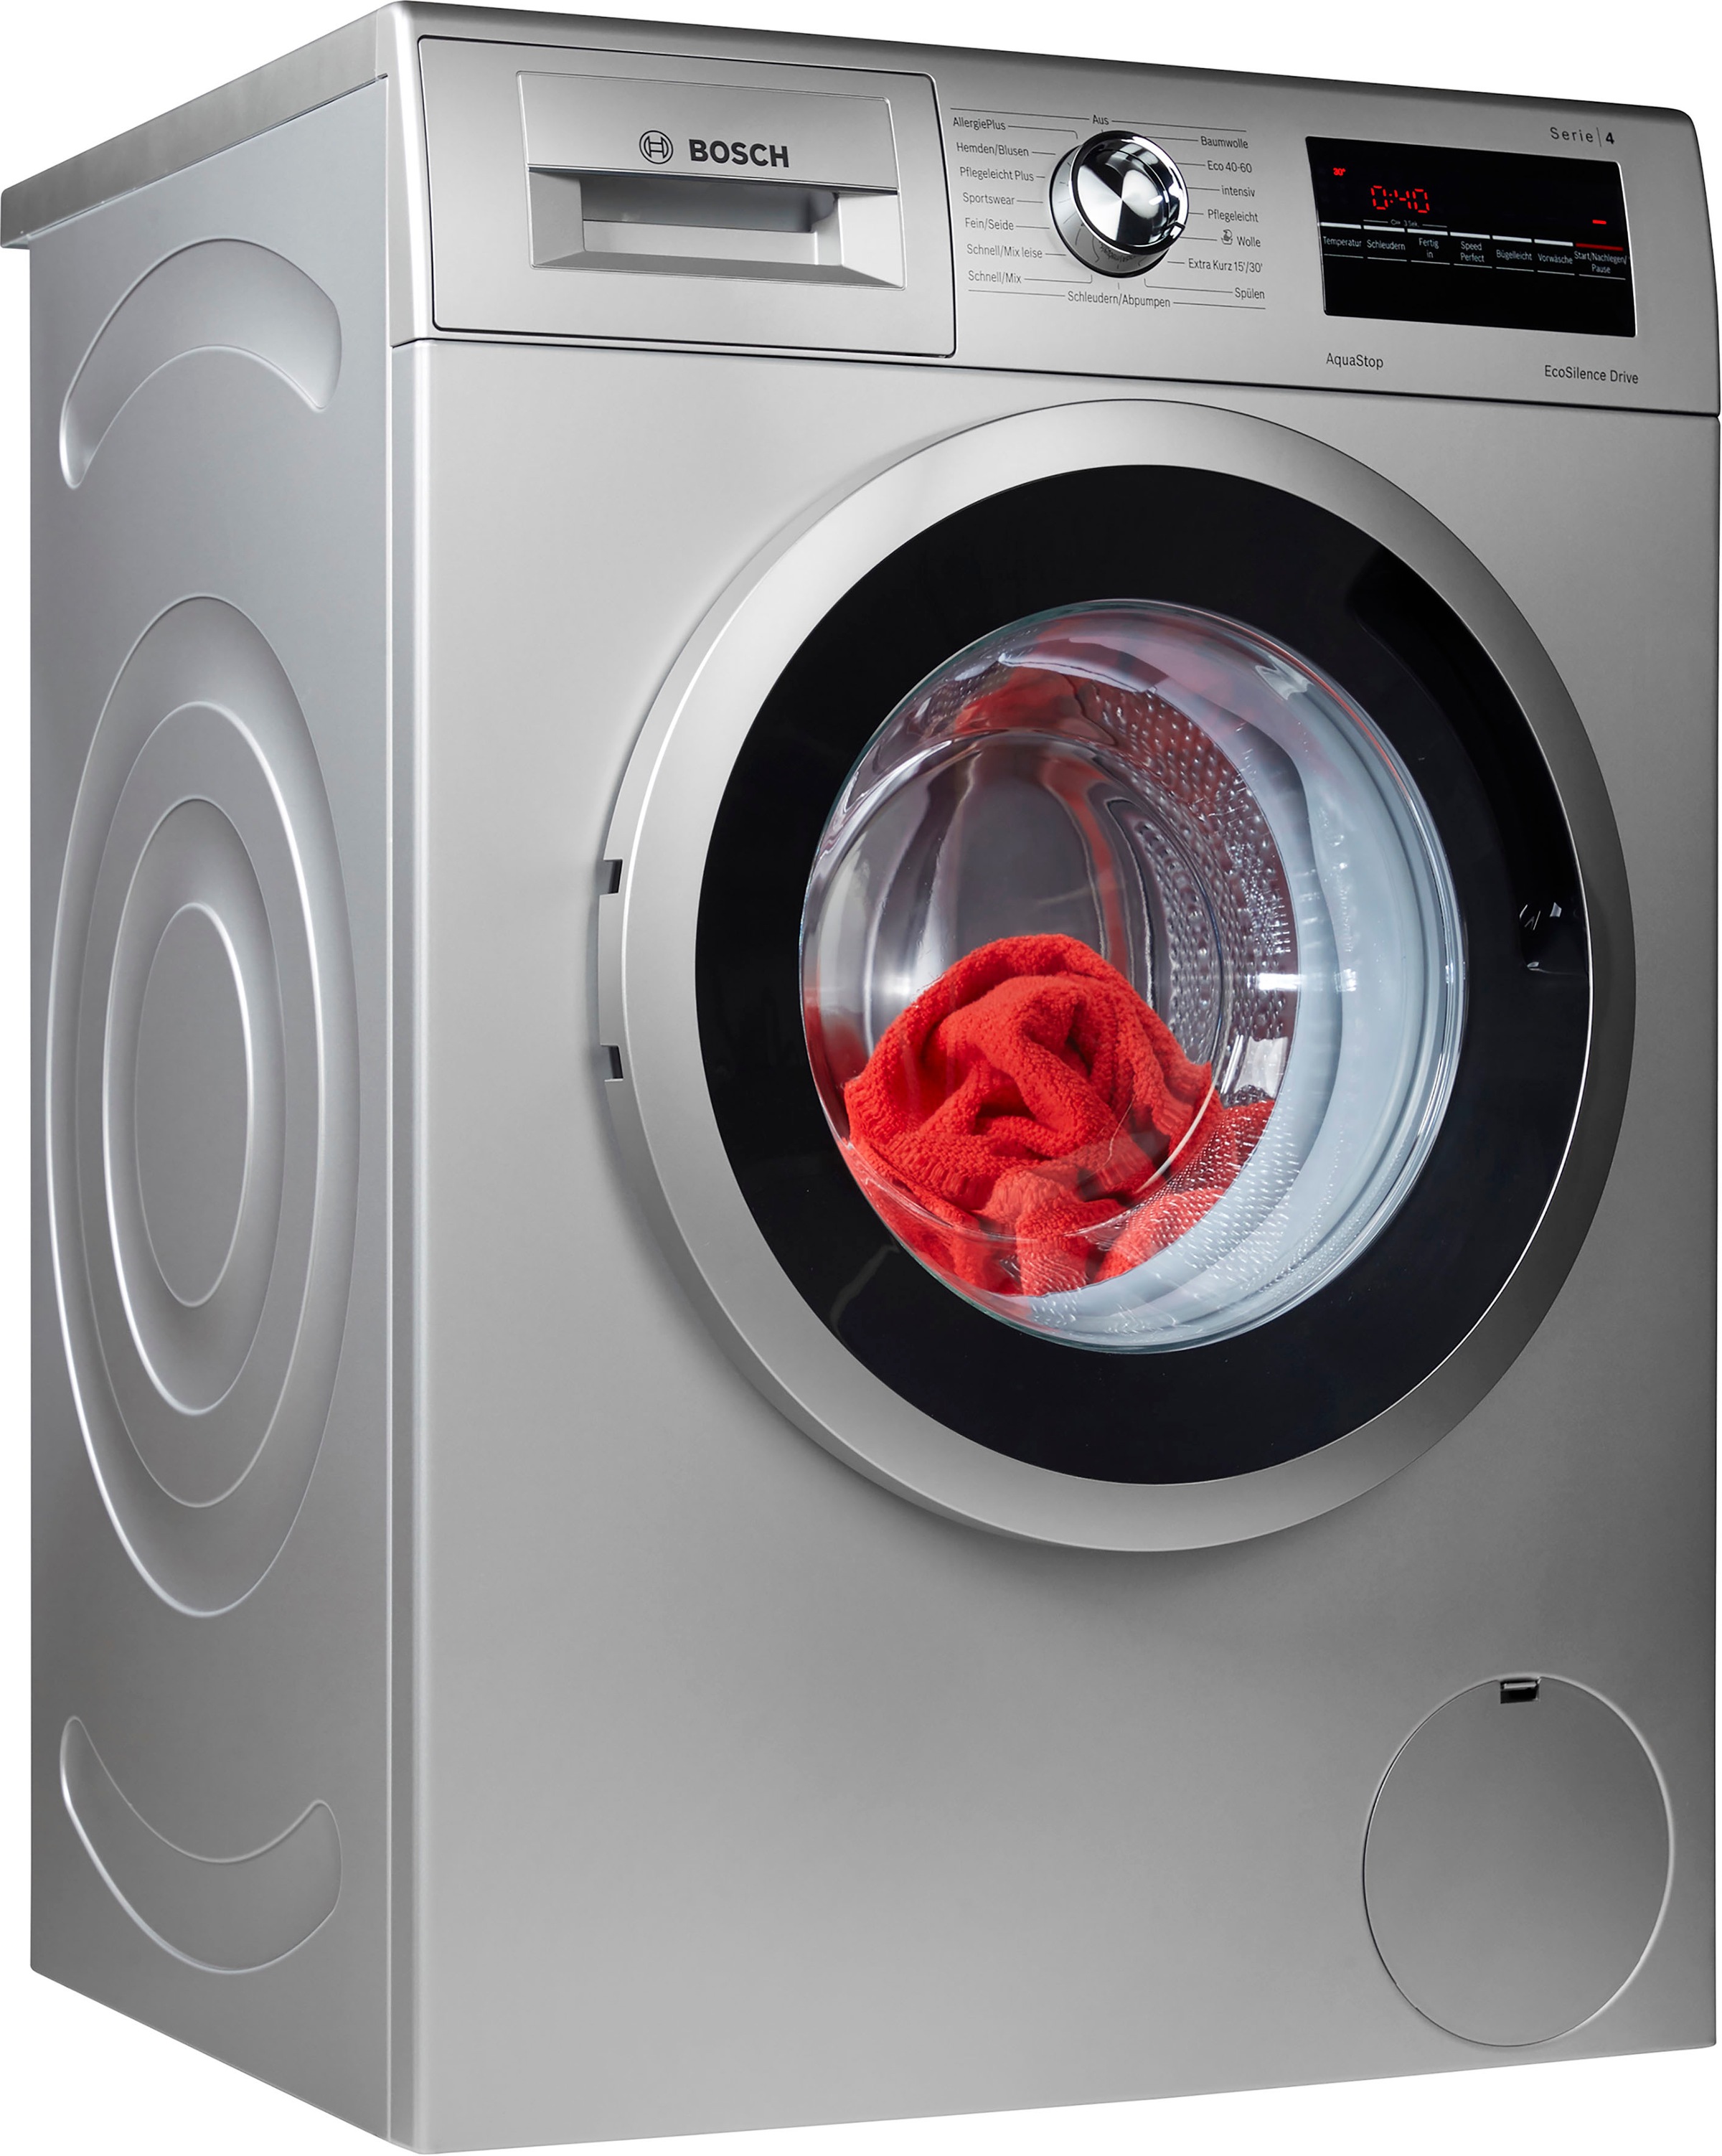 BOSCH Waschmaschine XXL Jahren mit 7 kg, WAN282X0, U/min 3 1400 Garantie »WAN282X0«